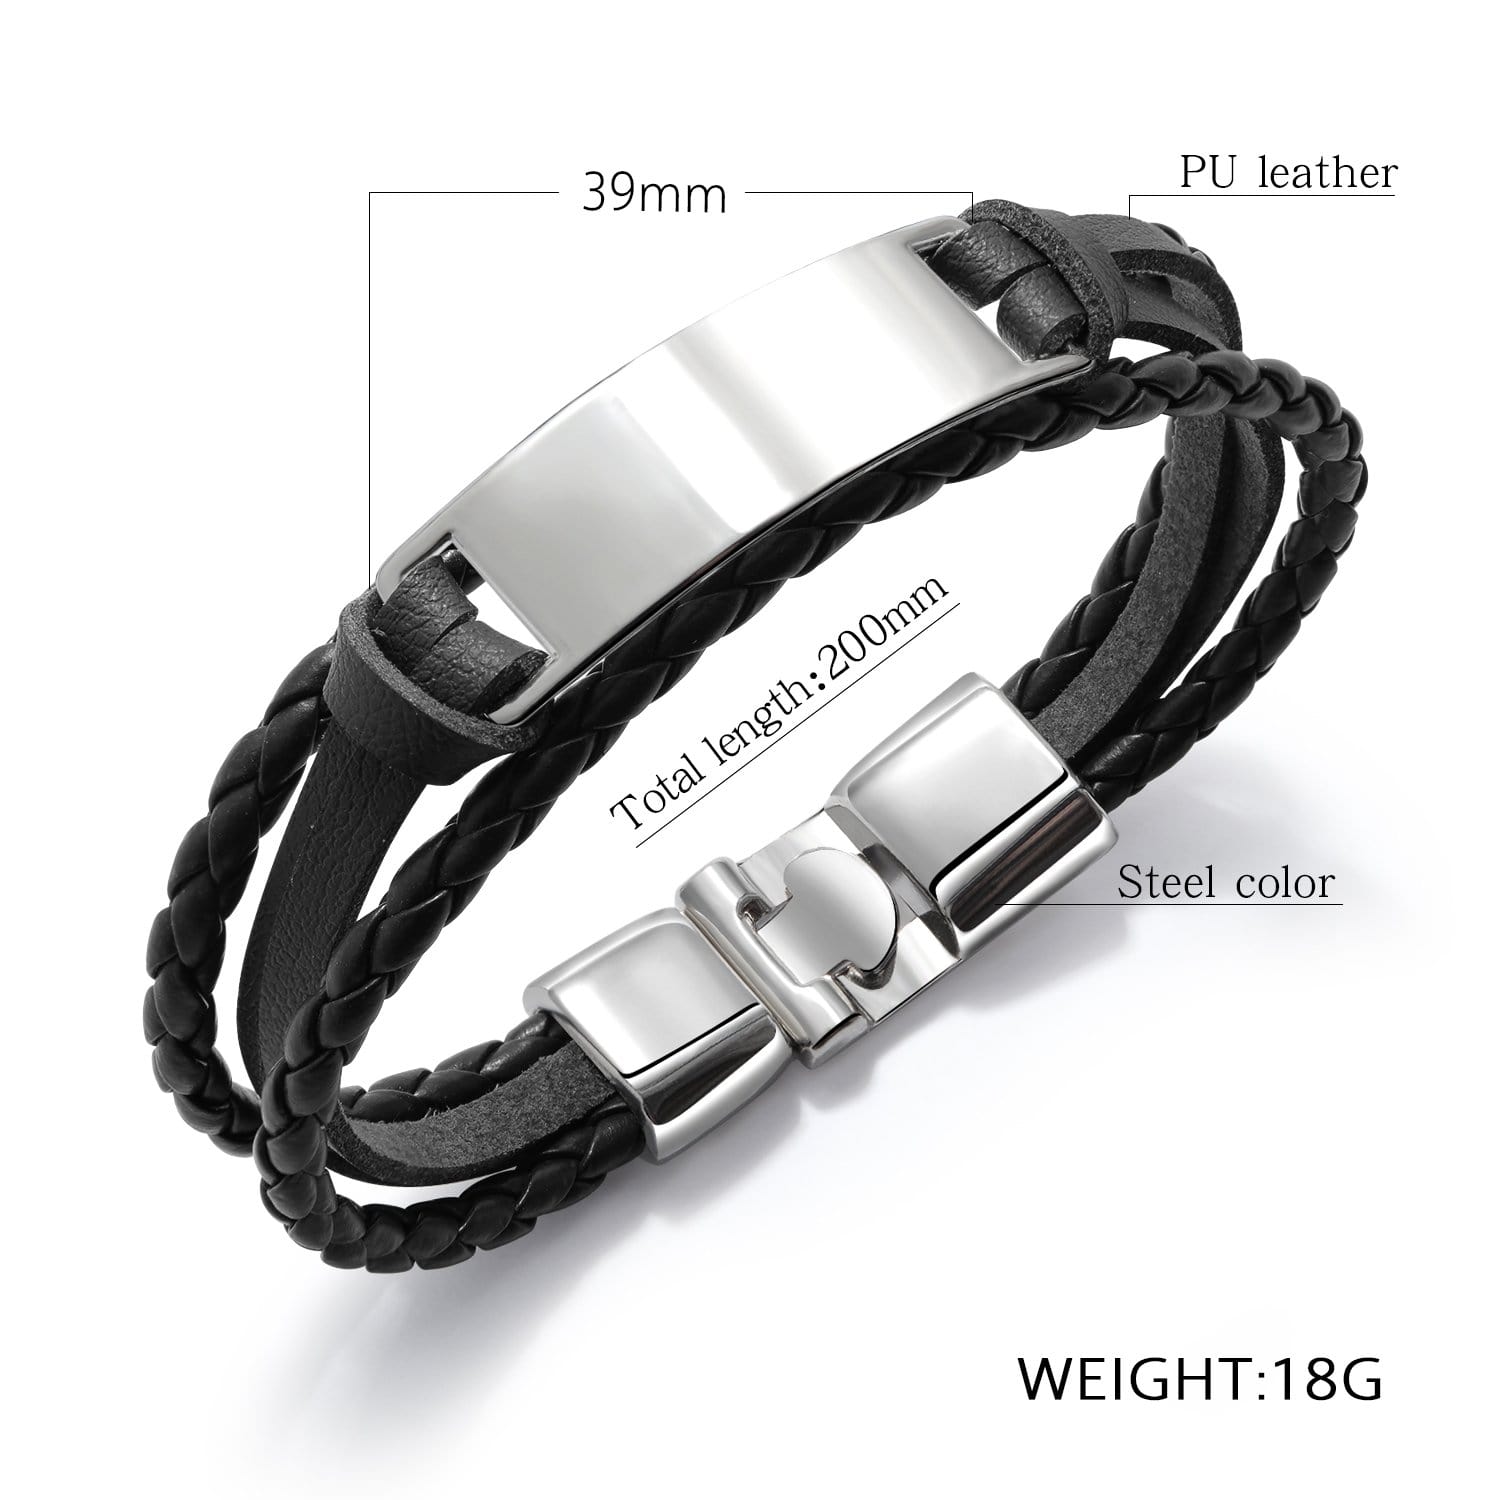 Bracelets To My Girlfriend - I Love You Leather Bracelet GiveMe-Gifts